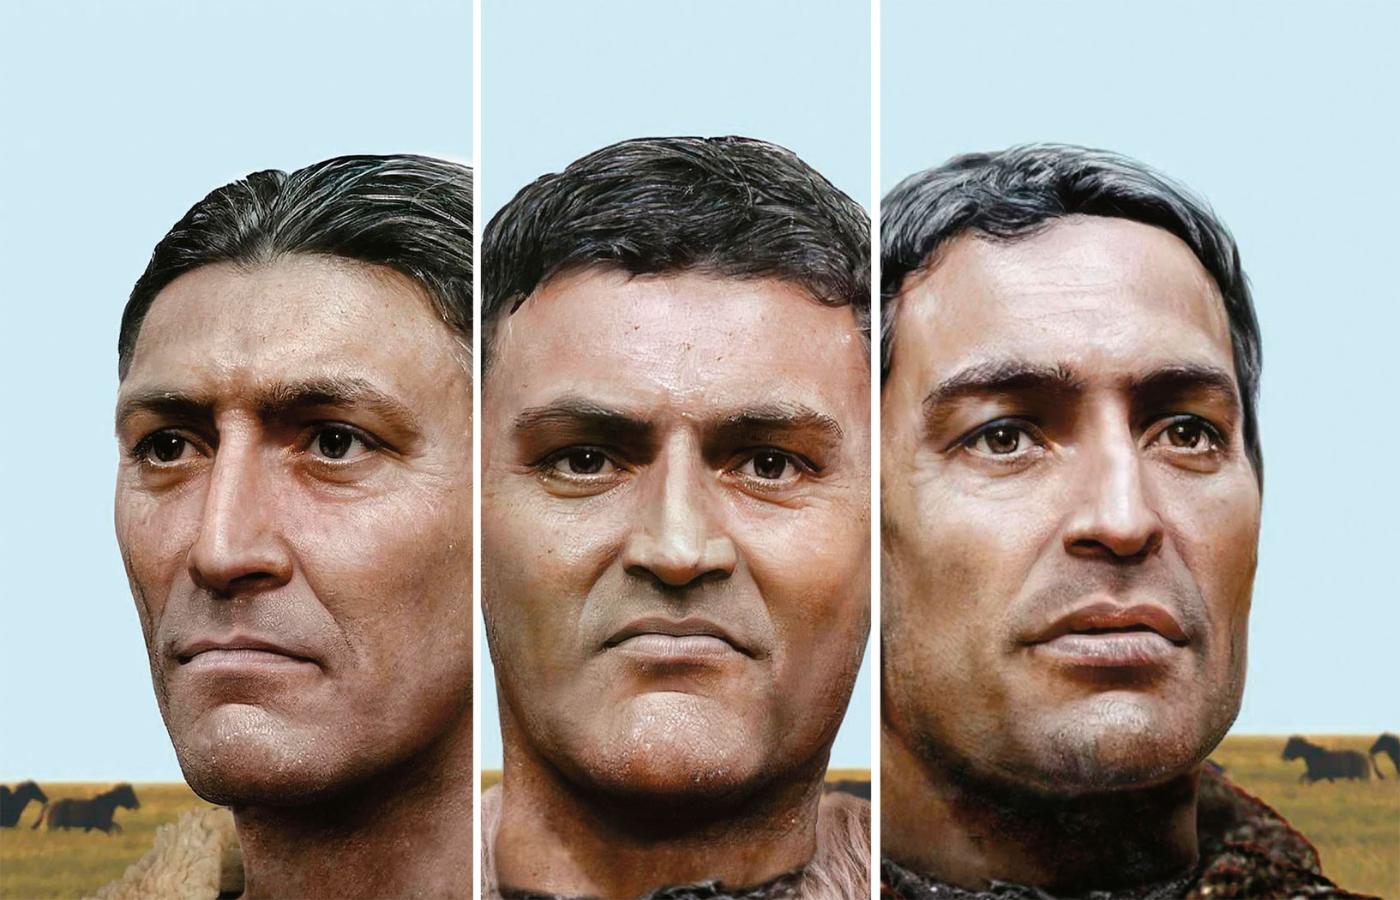 Wykonana na podstawie czaszek komputerowa rekonstrukcja twarzy przedstawicieli kultury grobów jamowych uważanych za Indoeuropejczyków.